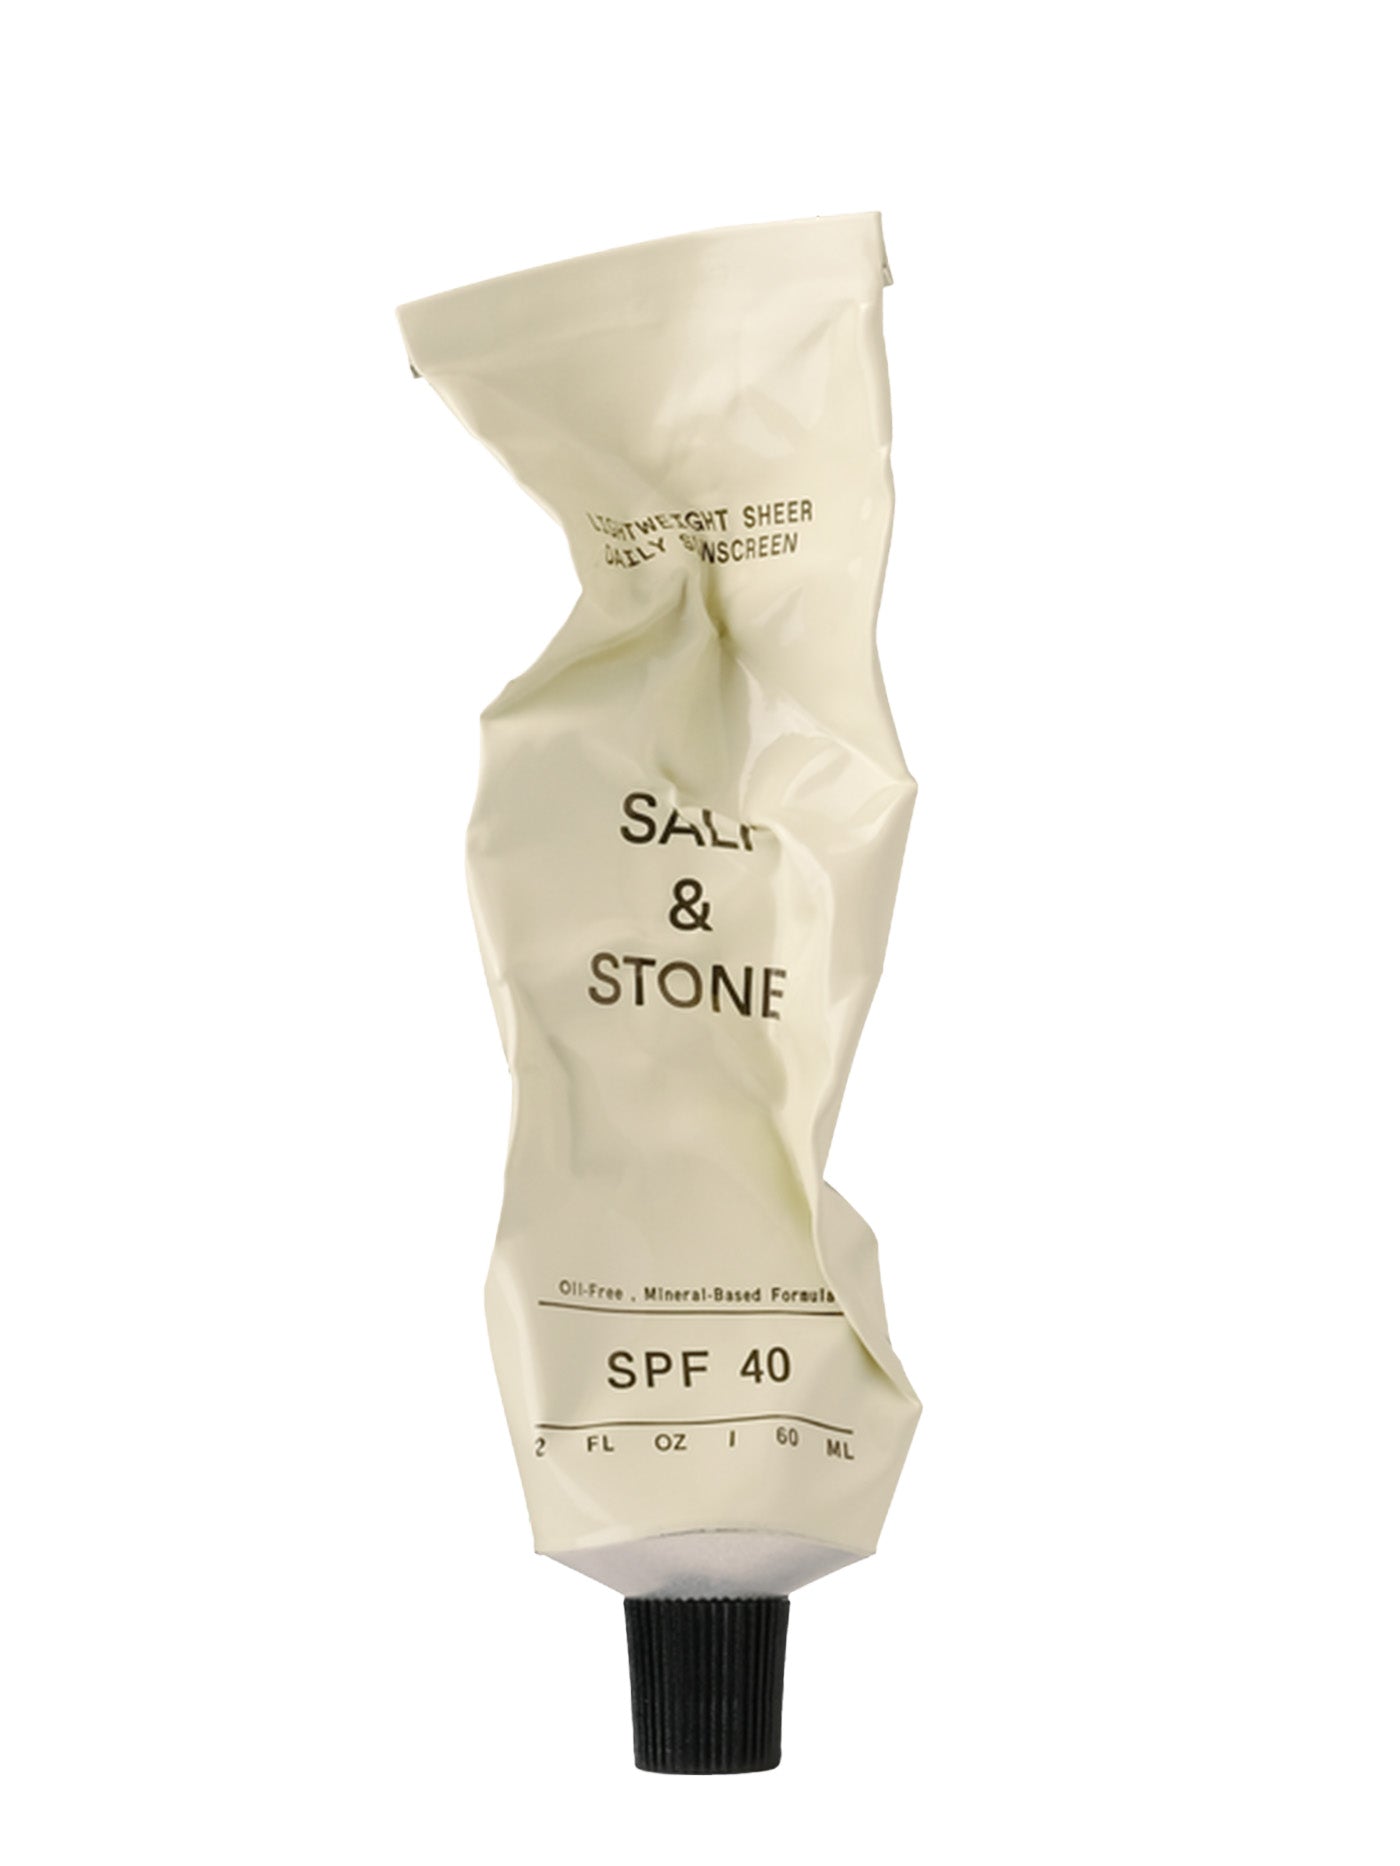 Salt & Stone Lightweight Sheer Daily SPF 40 Sunscreen